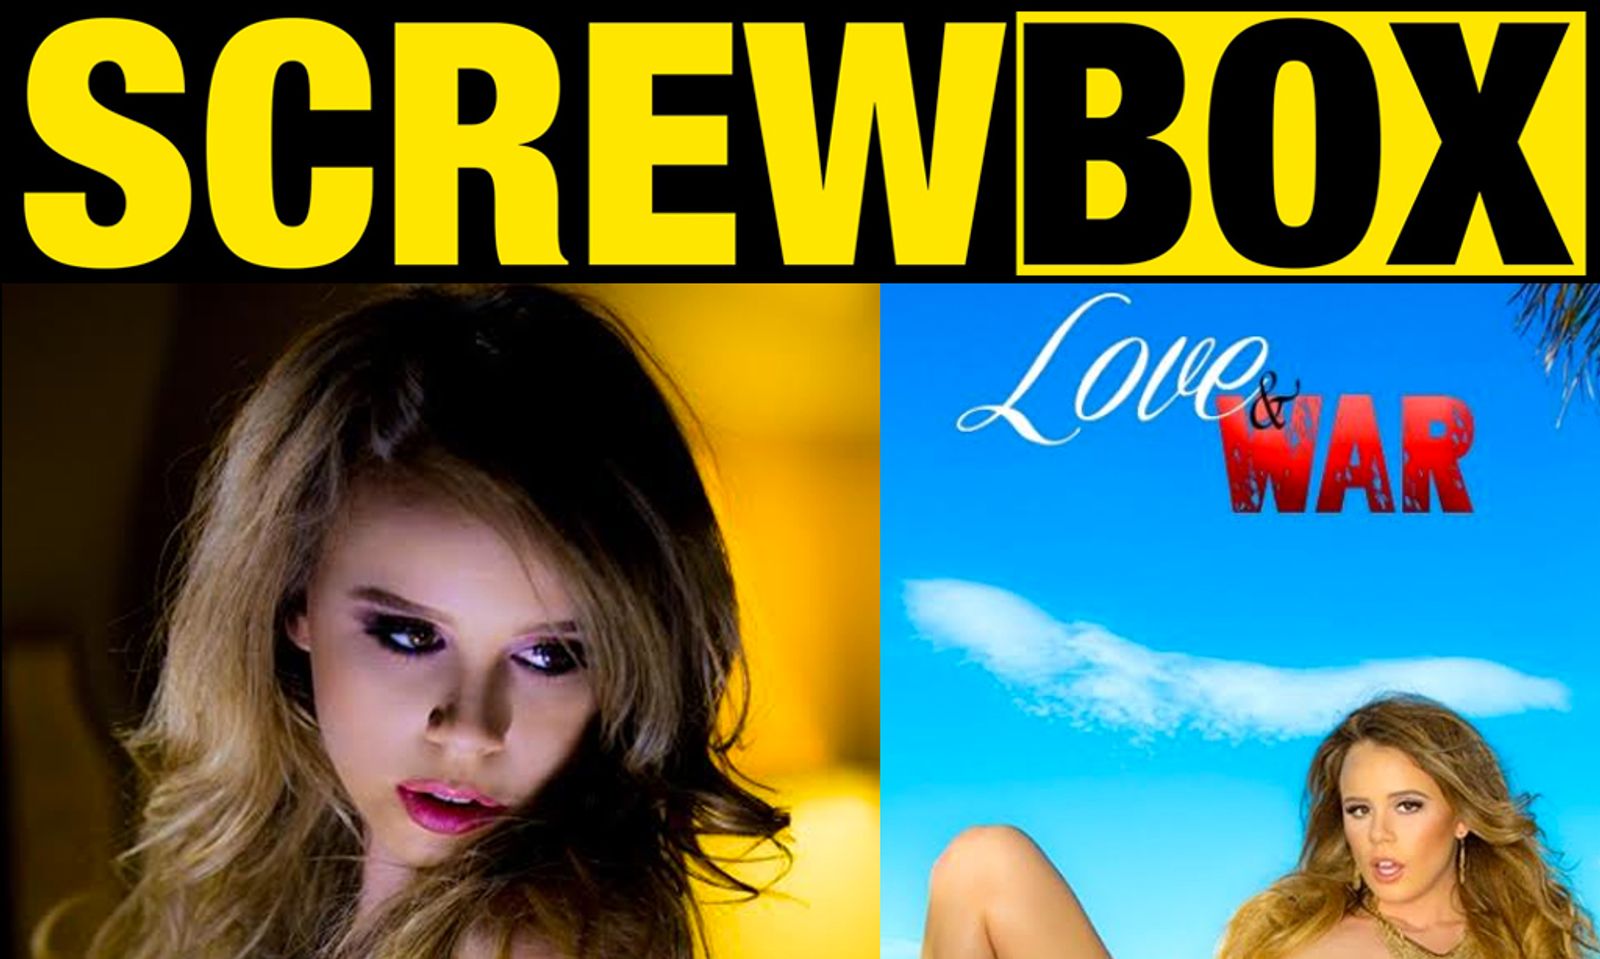 Screwbox.com Features Alexis Adams in 'Love & War'